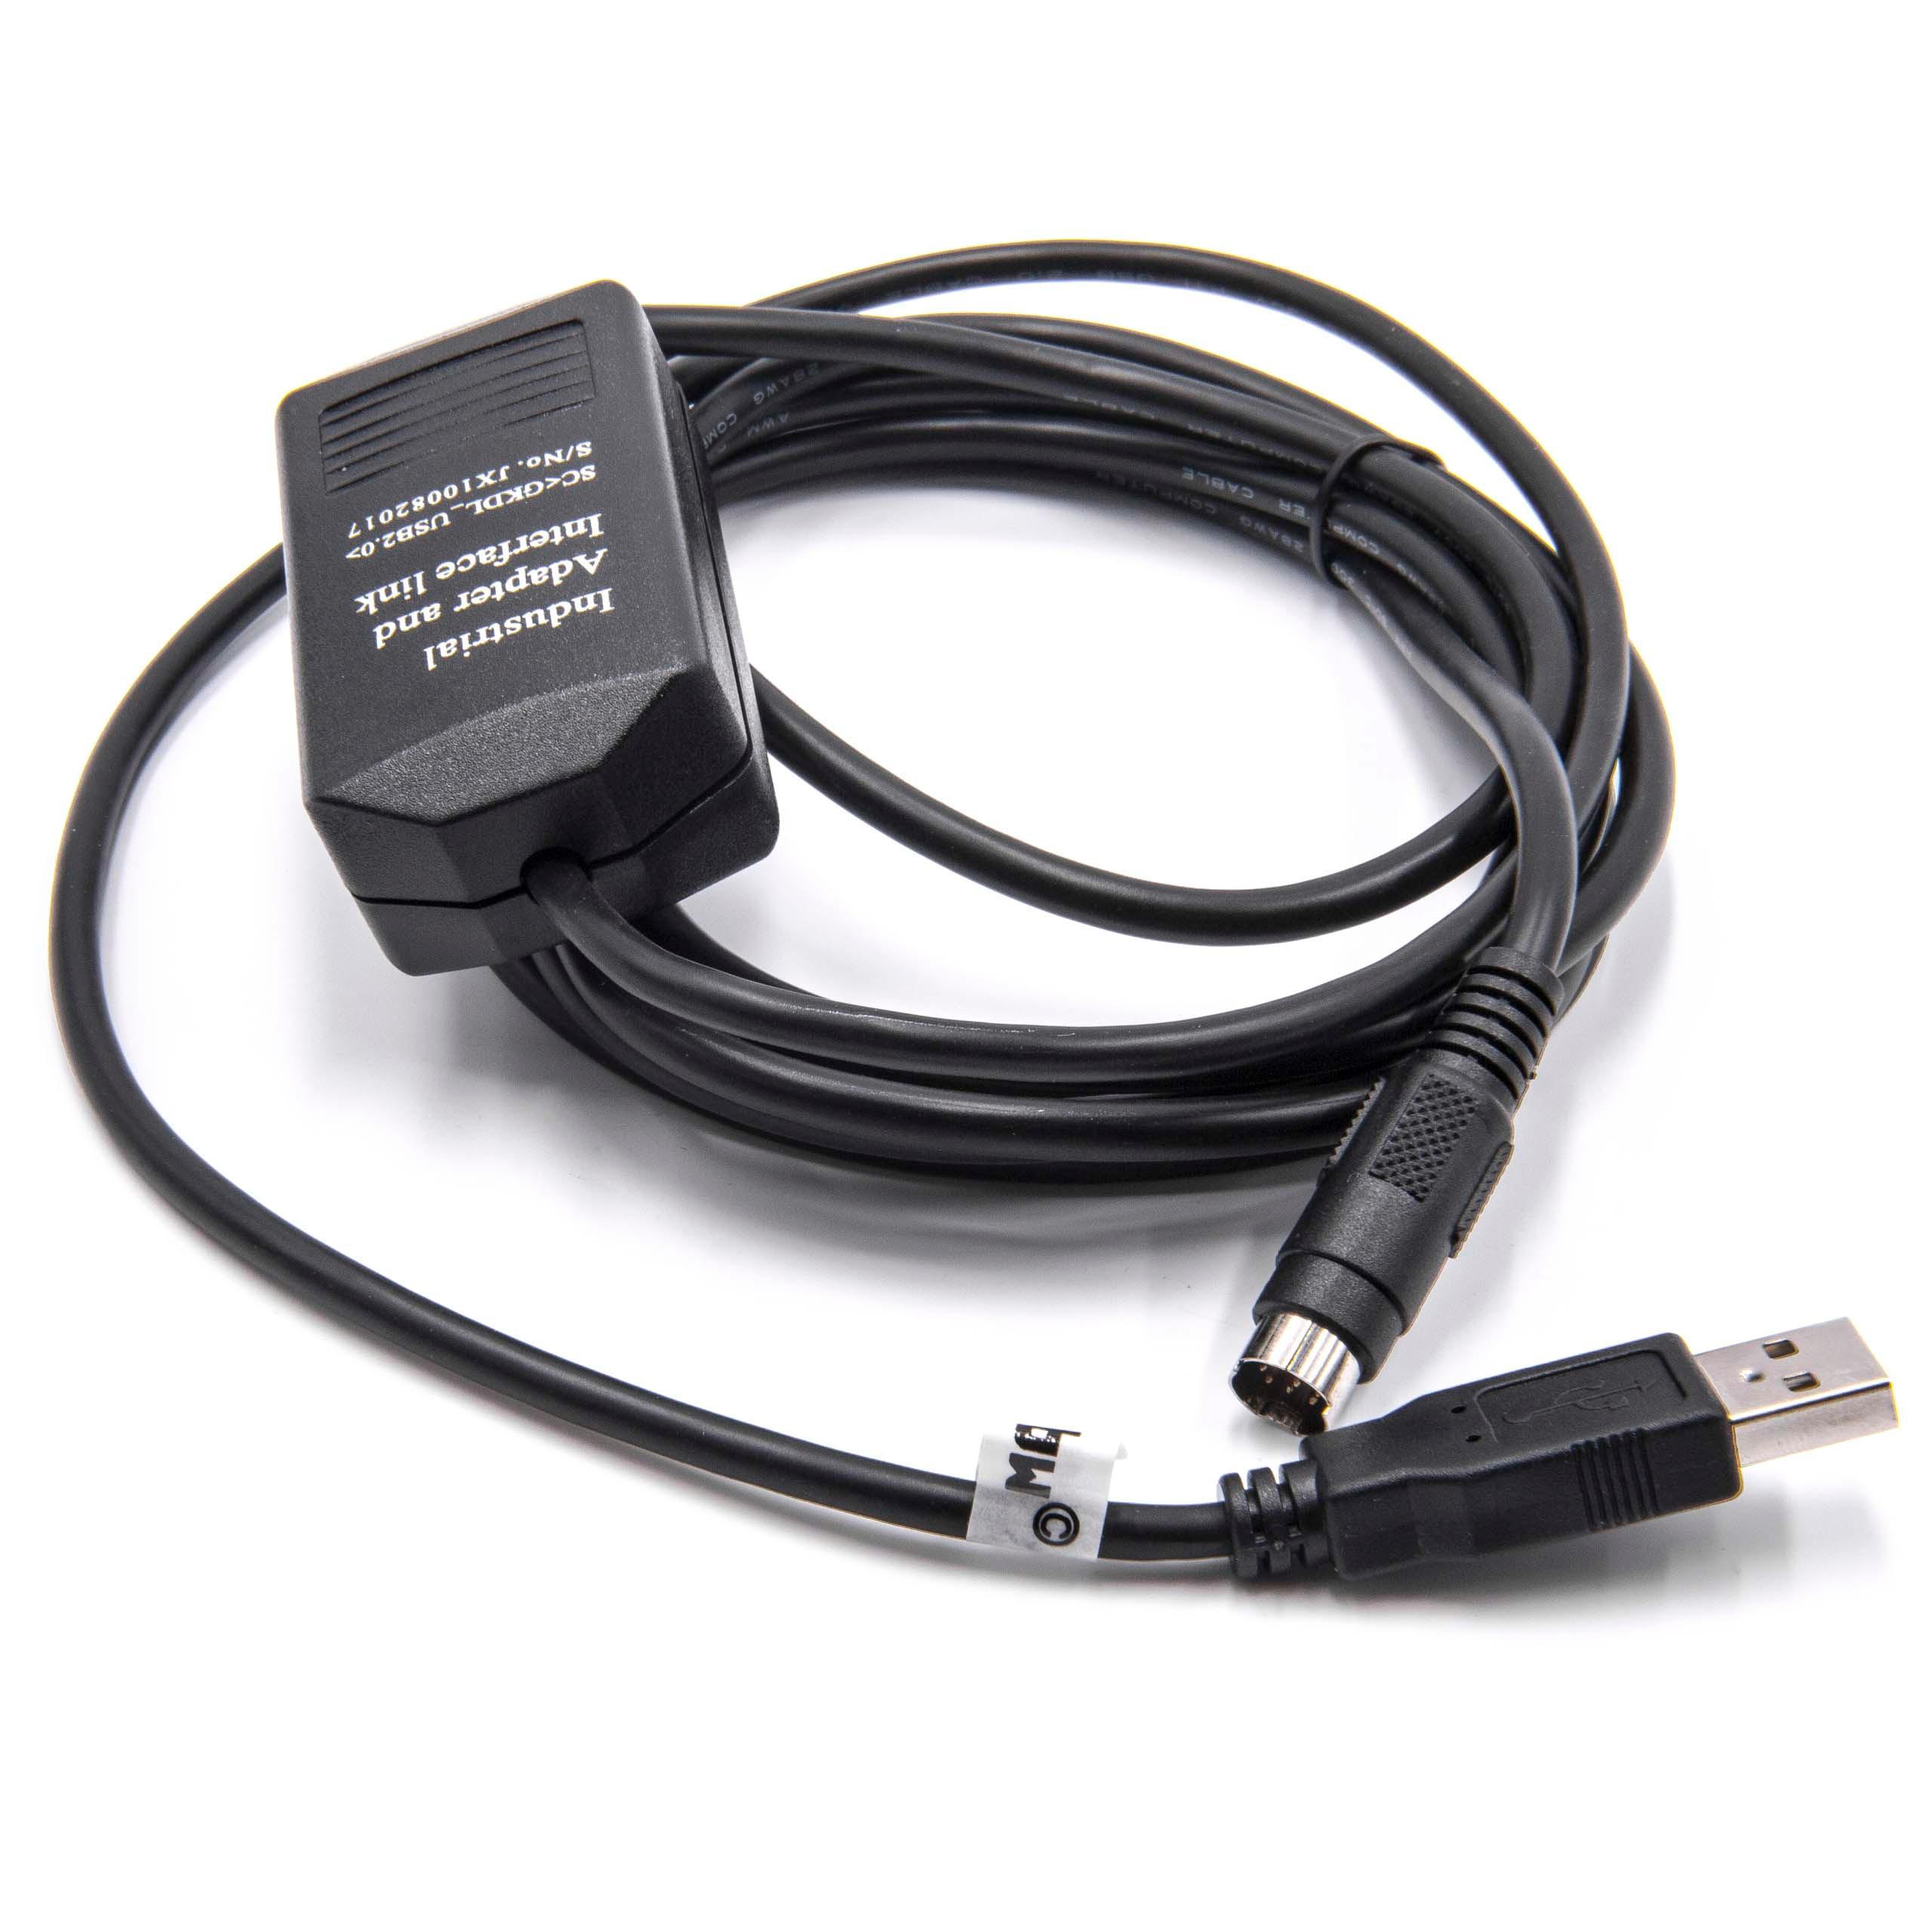 Programmierkabel als Ersatz für USB-1761-CBL-PM02 für Allen Bradley Funkgerät